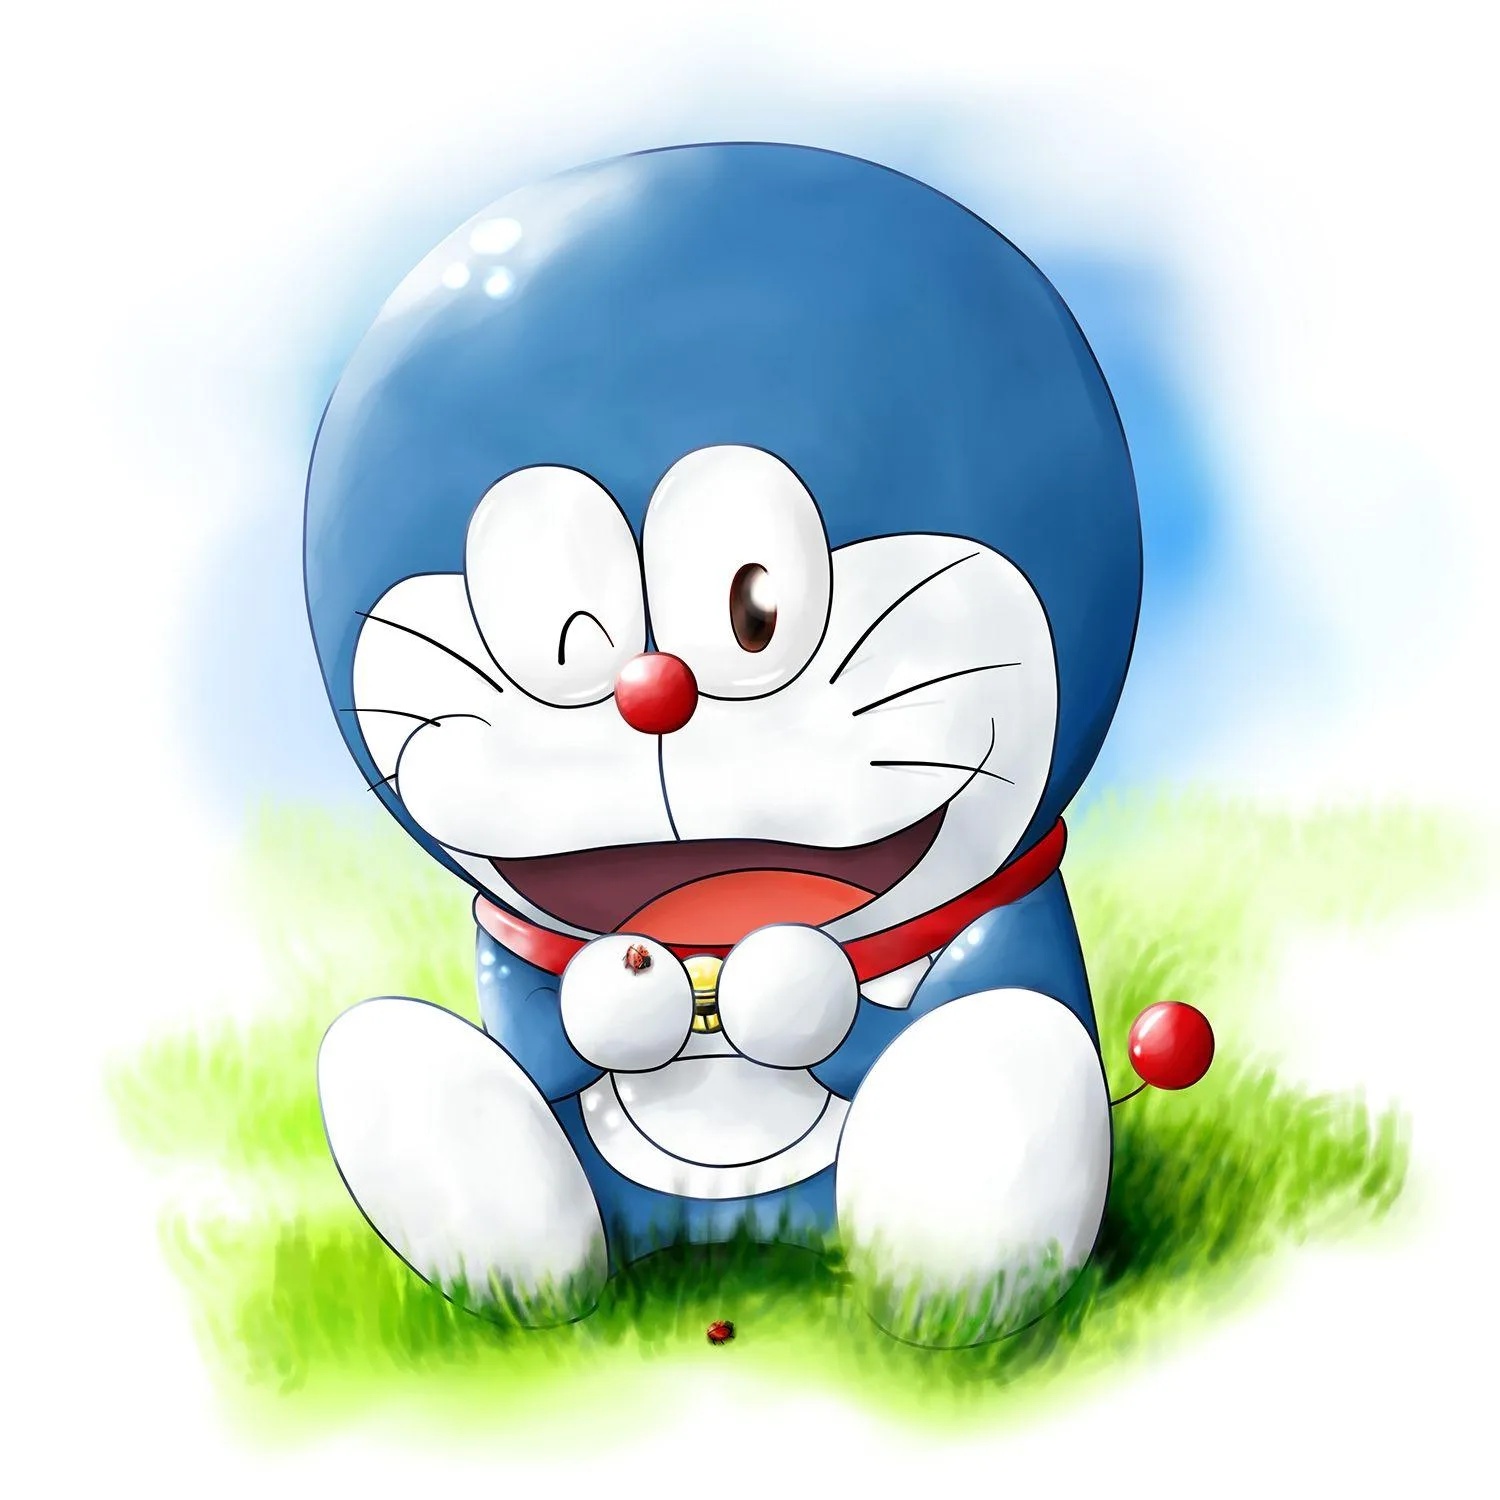 Tổng hợp hình ảnh Doremon đẹp nhất  Kho ảnh đẹp  Mèo Đang yêu Doraemon